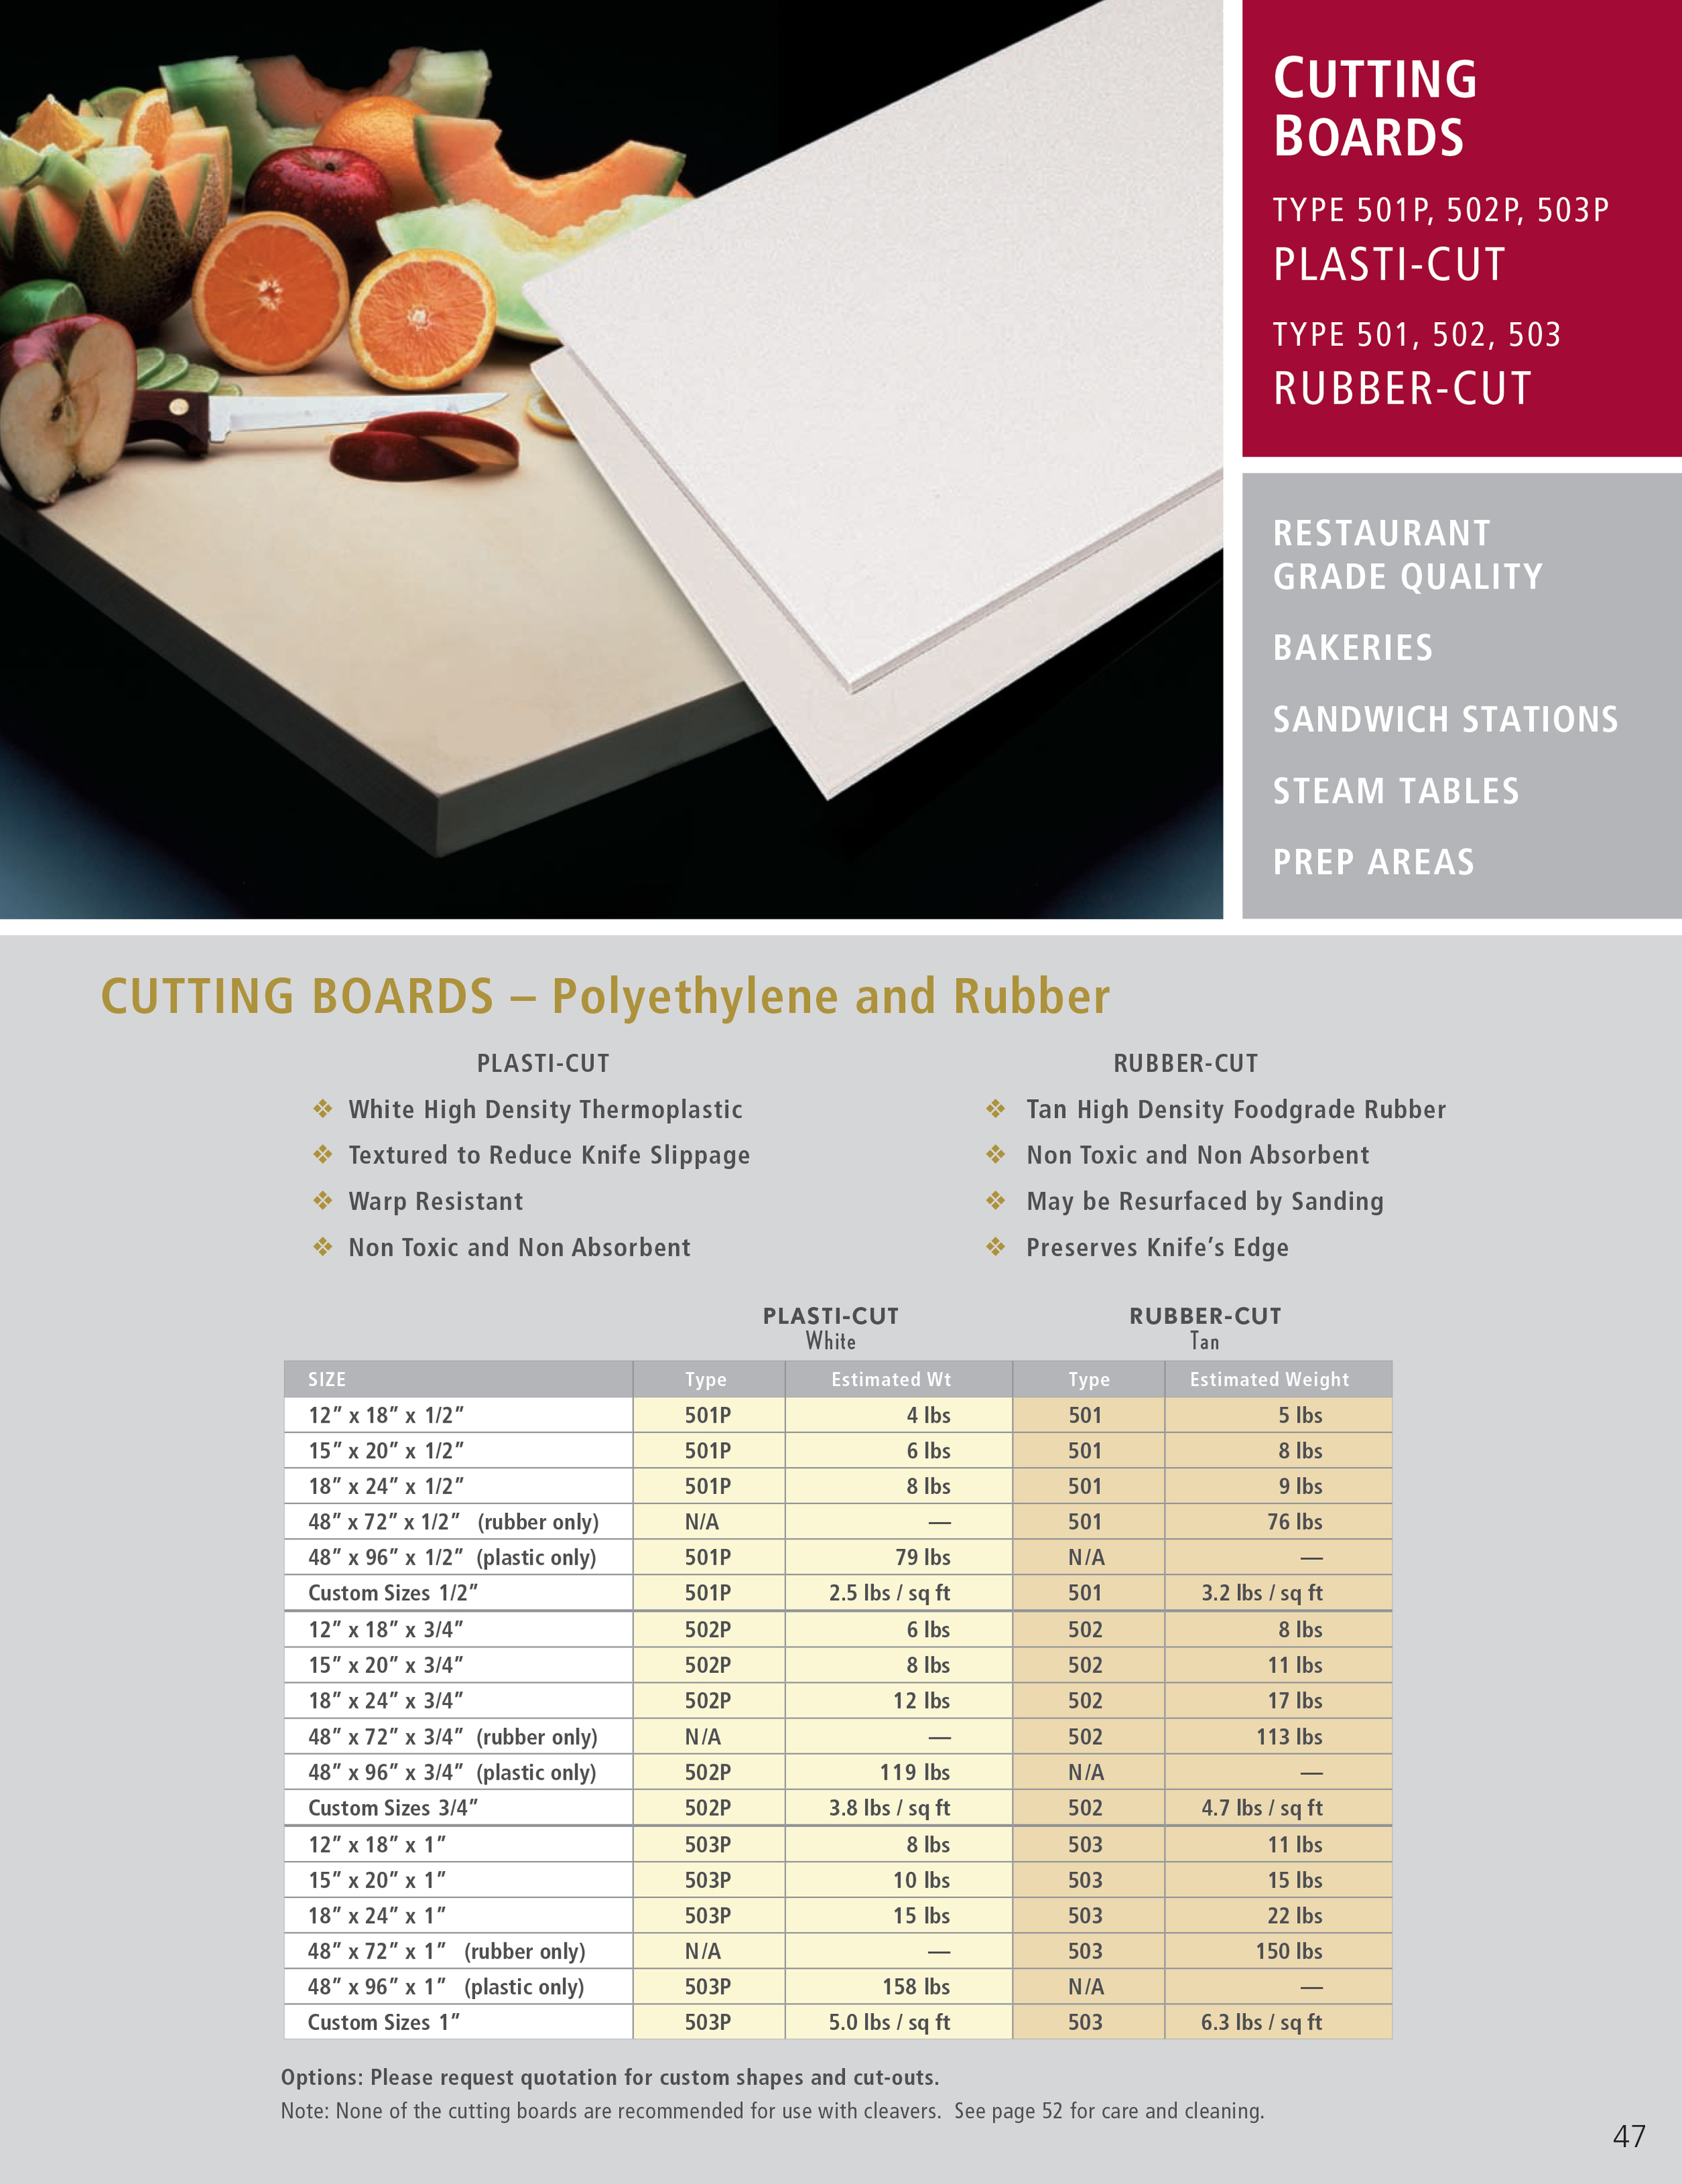 Cactus Mat Rubber Cutting Board - 20L x 15W x 1/2H